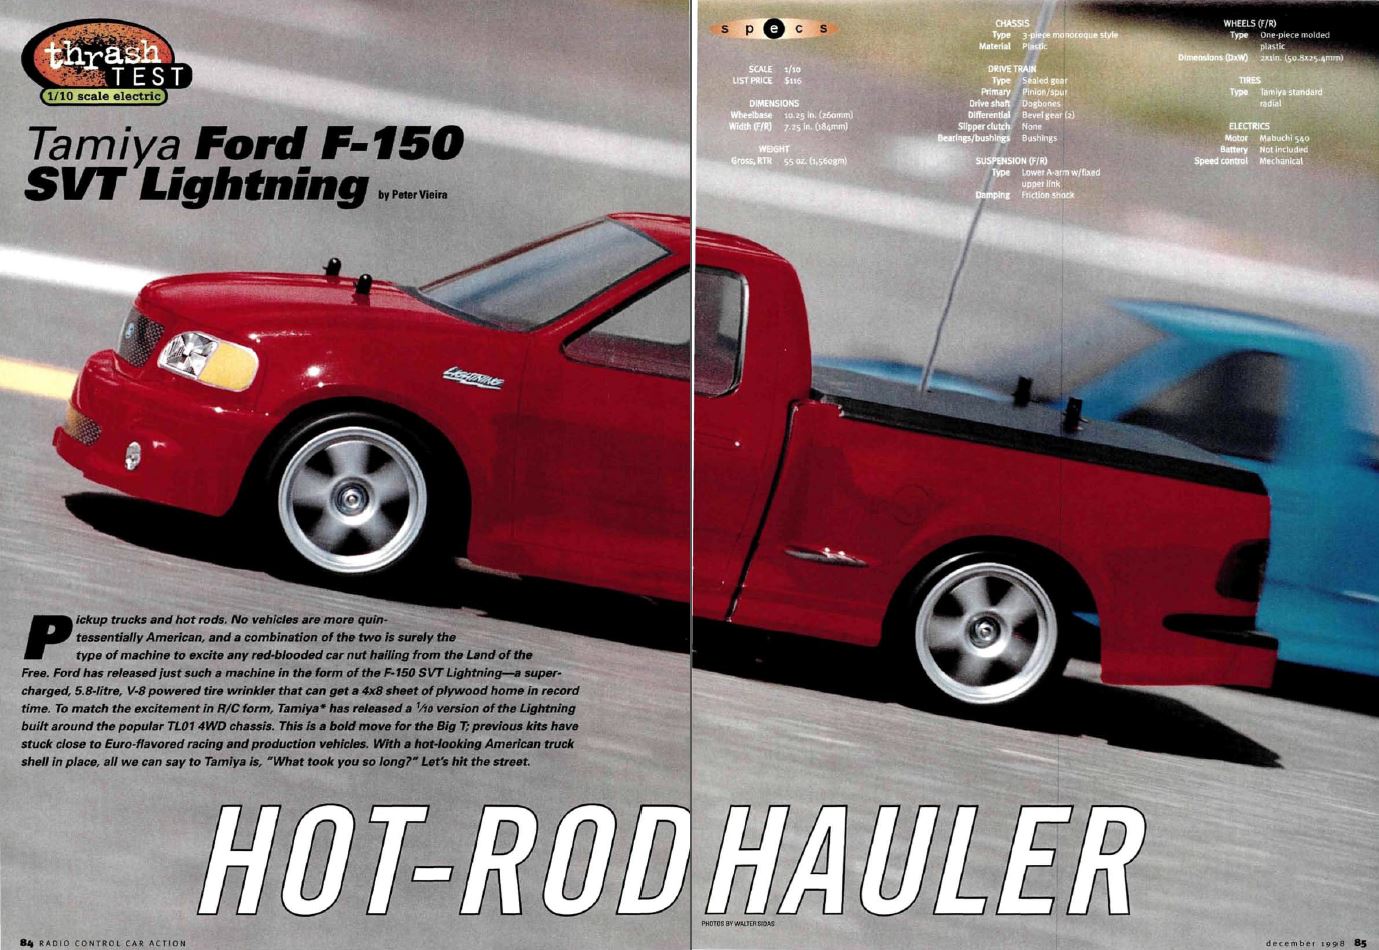 #TBT Tamiya Ford F-150 SVT Lightning truck reviewed in December 1998 Issue